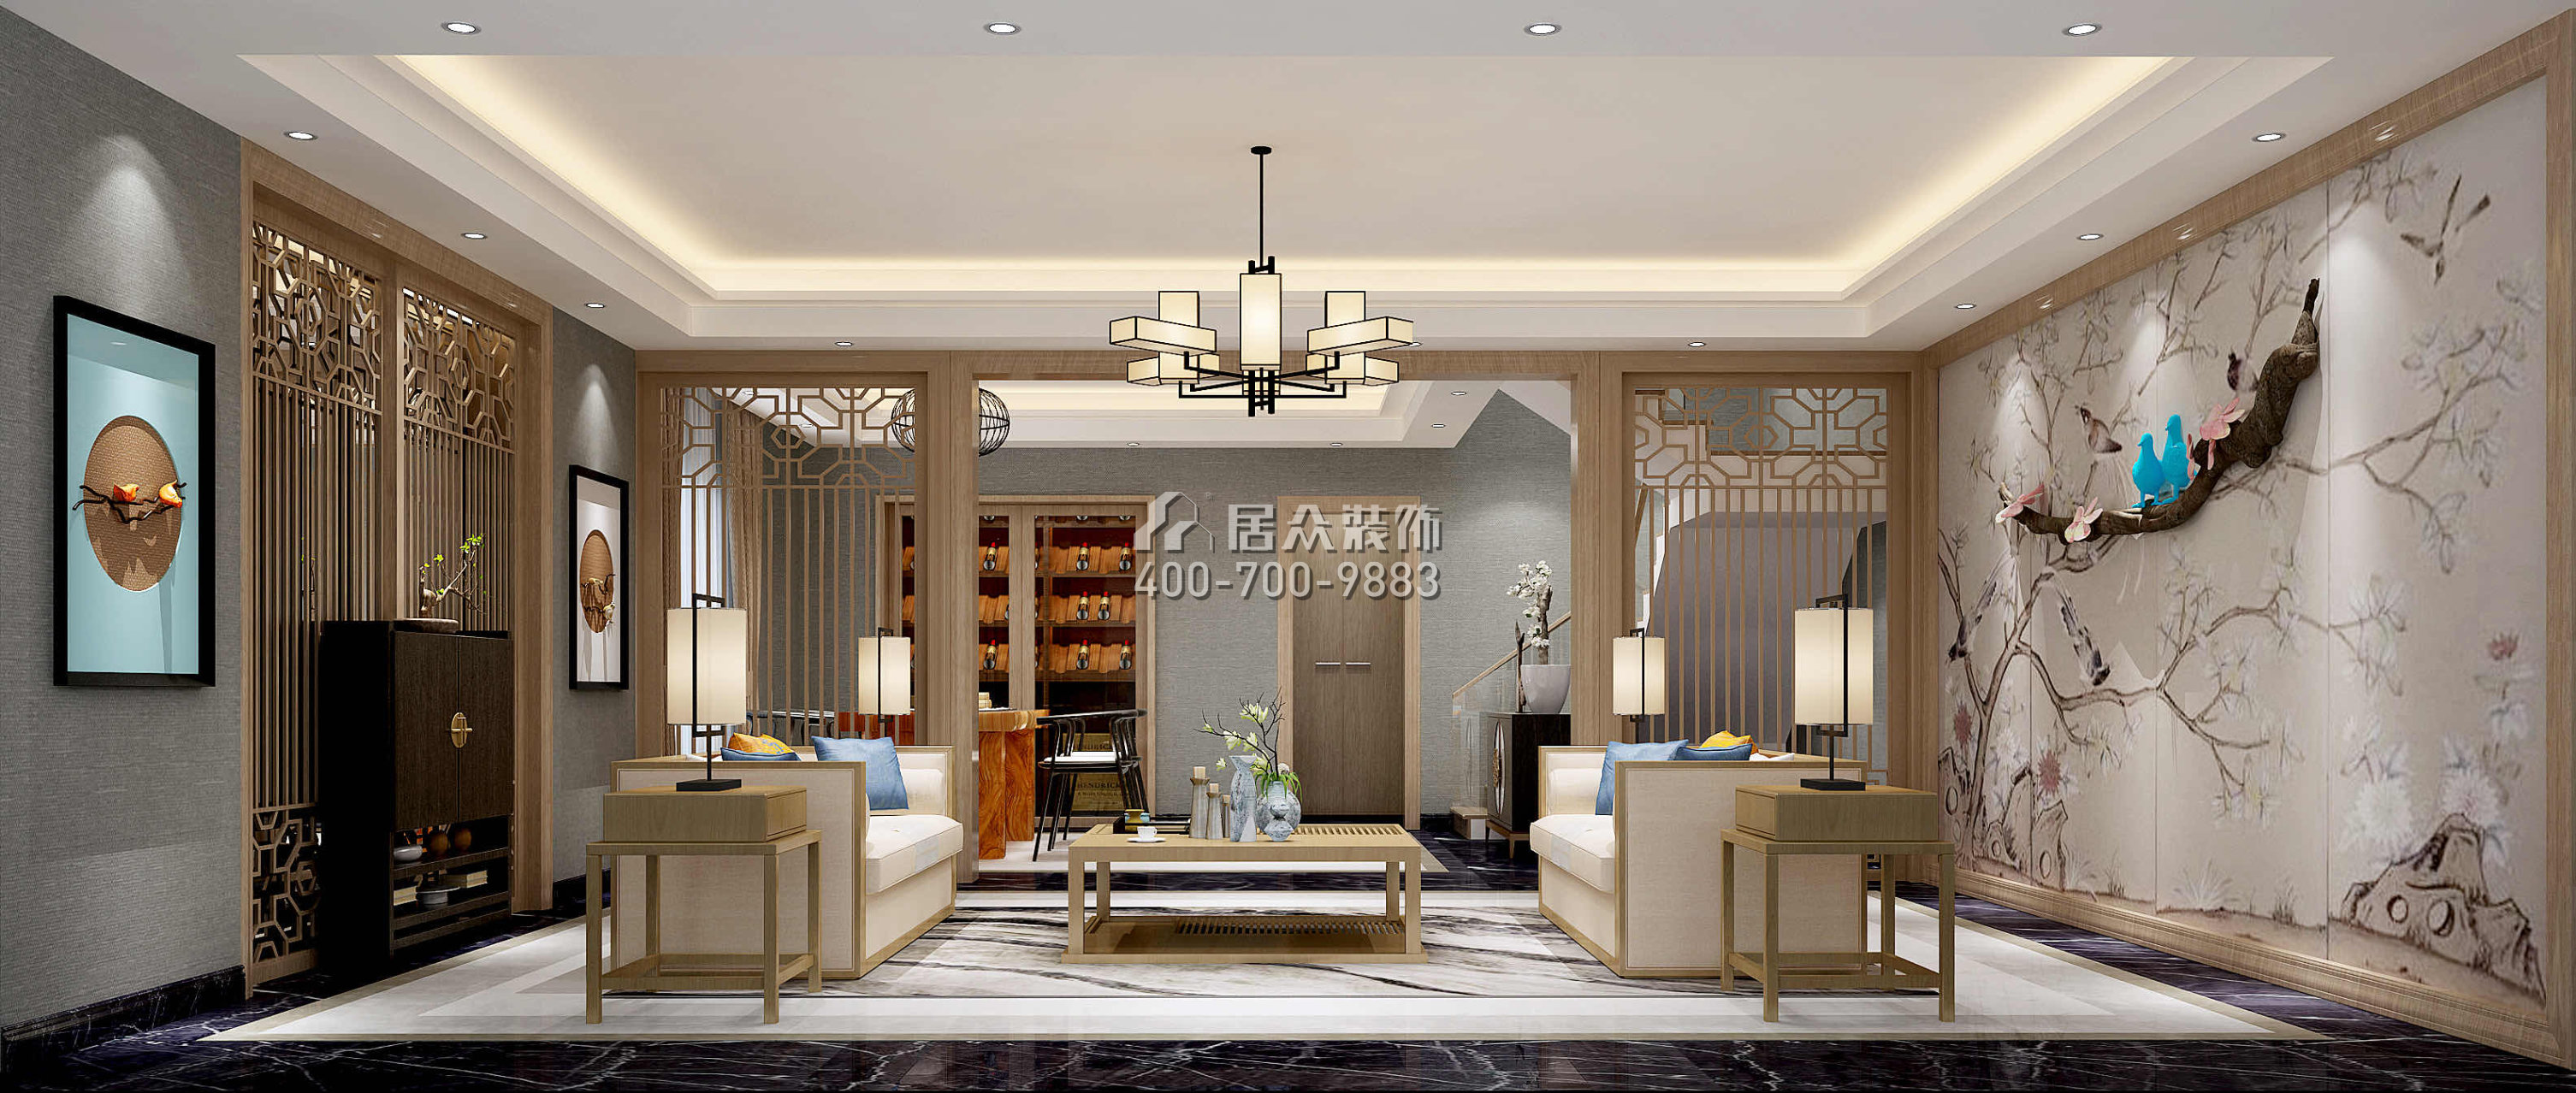 萬科棠樾450平方米中式風格別墅戶型茶室裝修效果圖